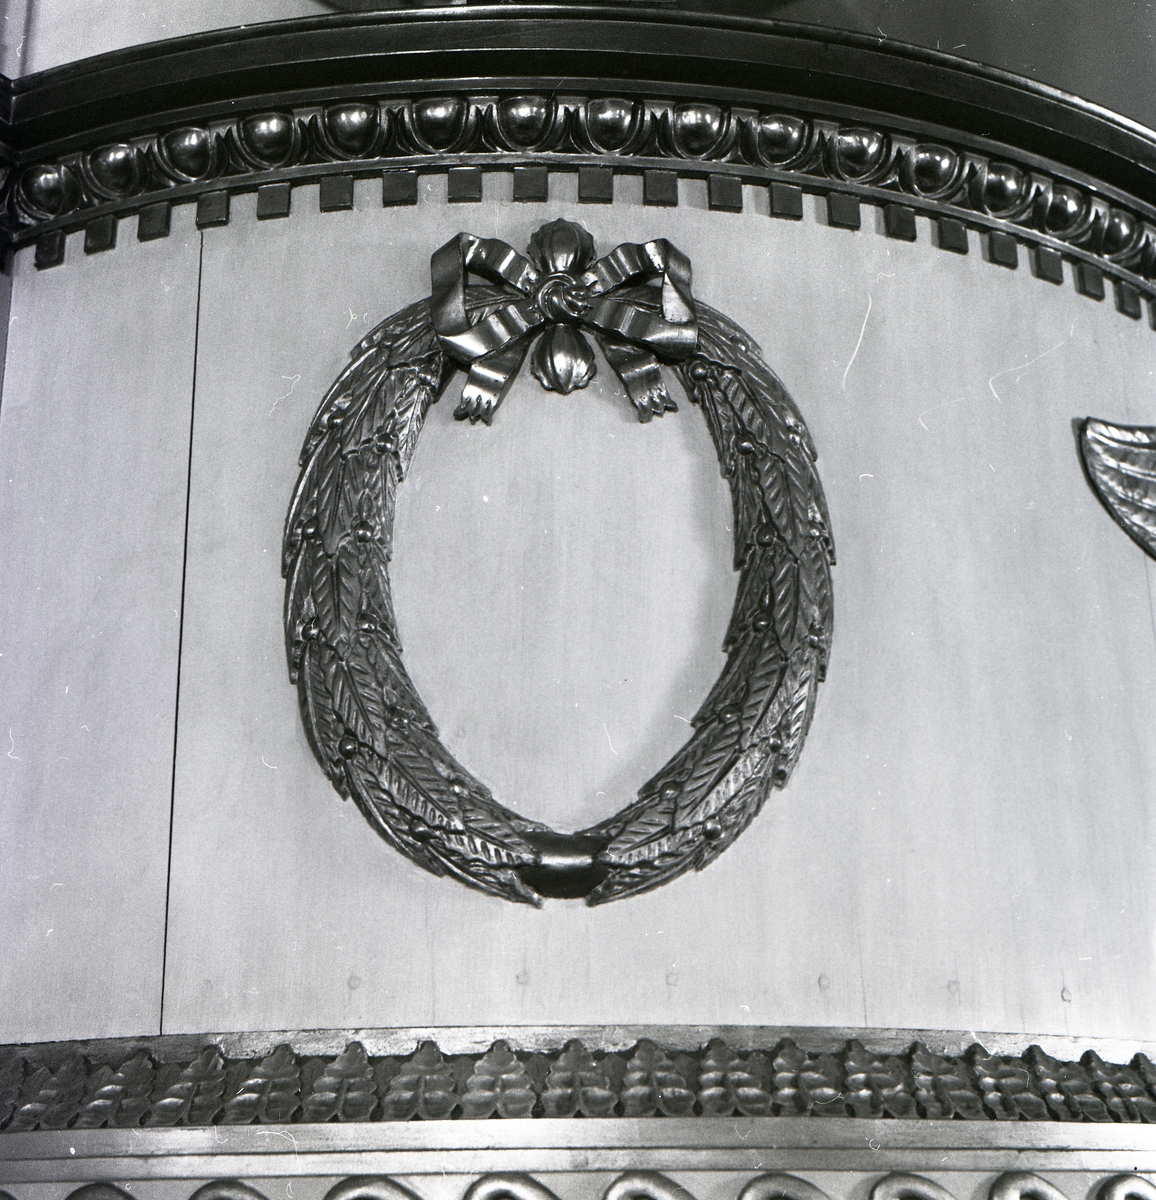 Alfta kyrka, 1981. Detalj från predikstolen utförd av hantverkarna Olof Brunk och Pehr Tulpan 1815. Målat och förgyllt af Johan Nyblad 1816.